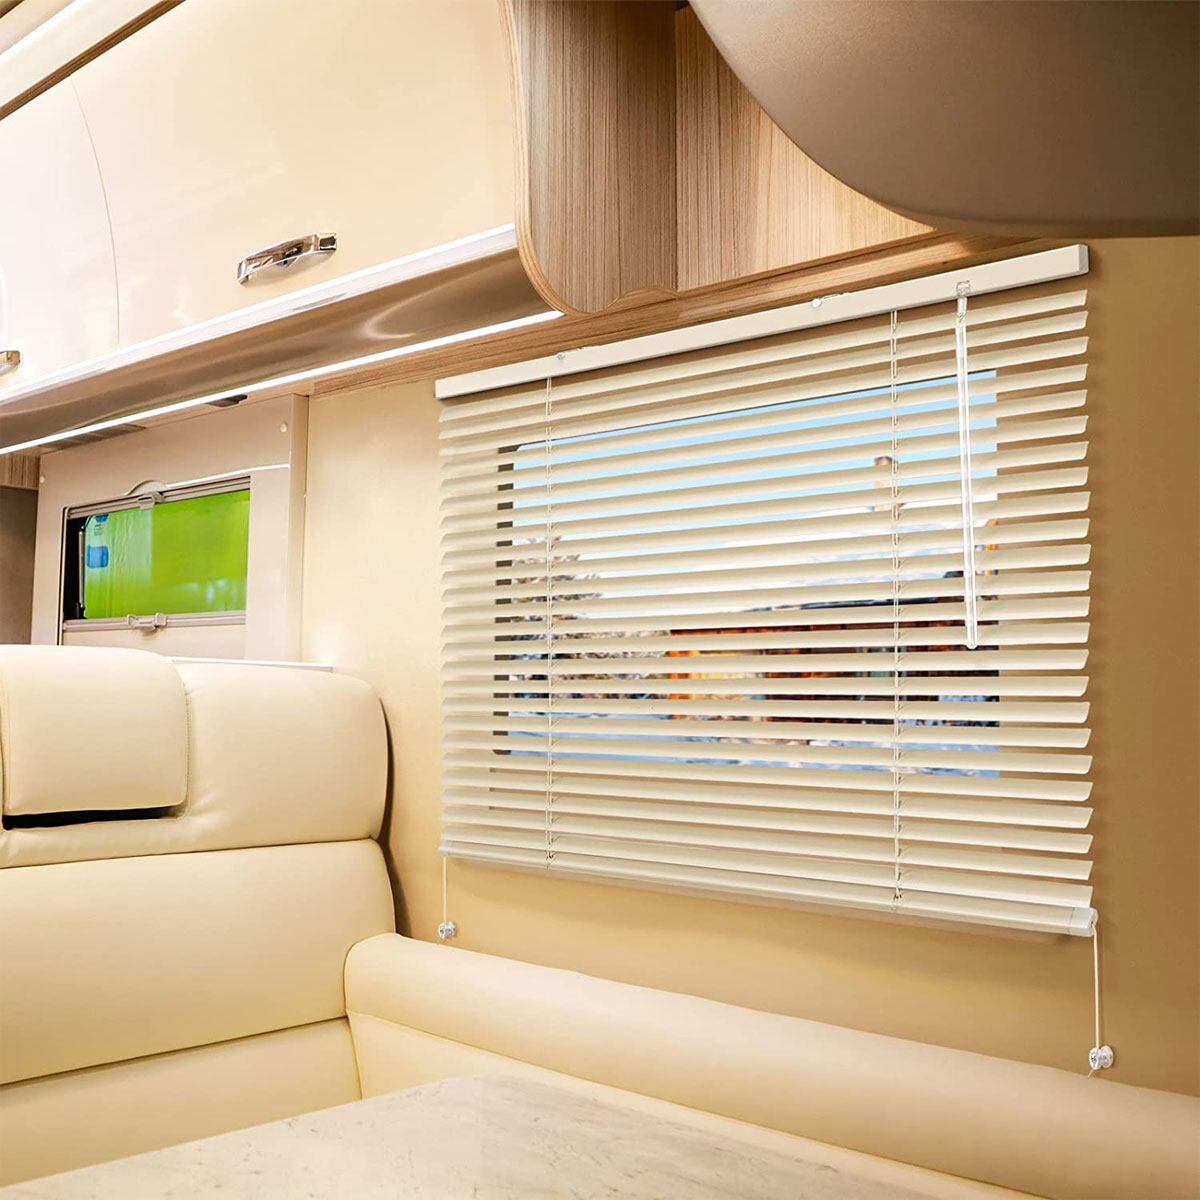 Custom rv bamboo blinds, rv cellular blinds, rv door window blind exporter